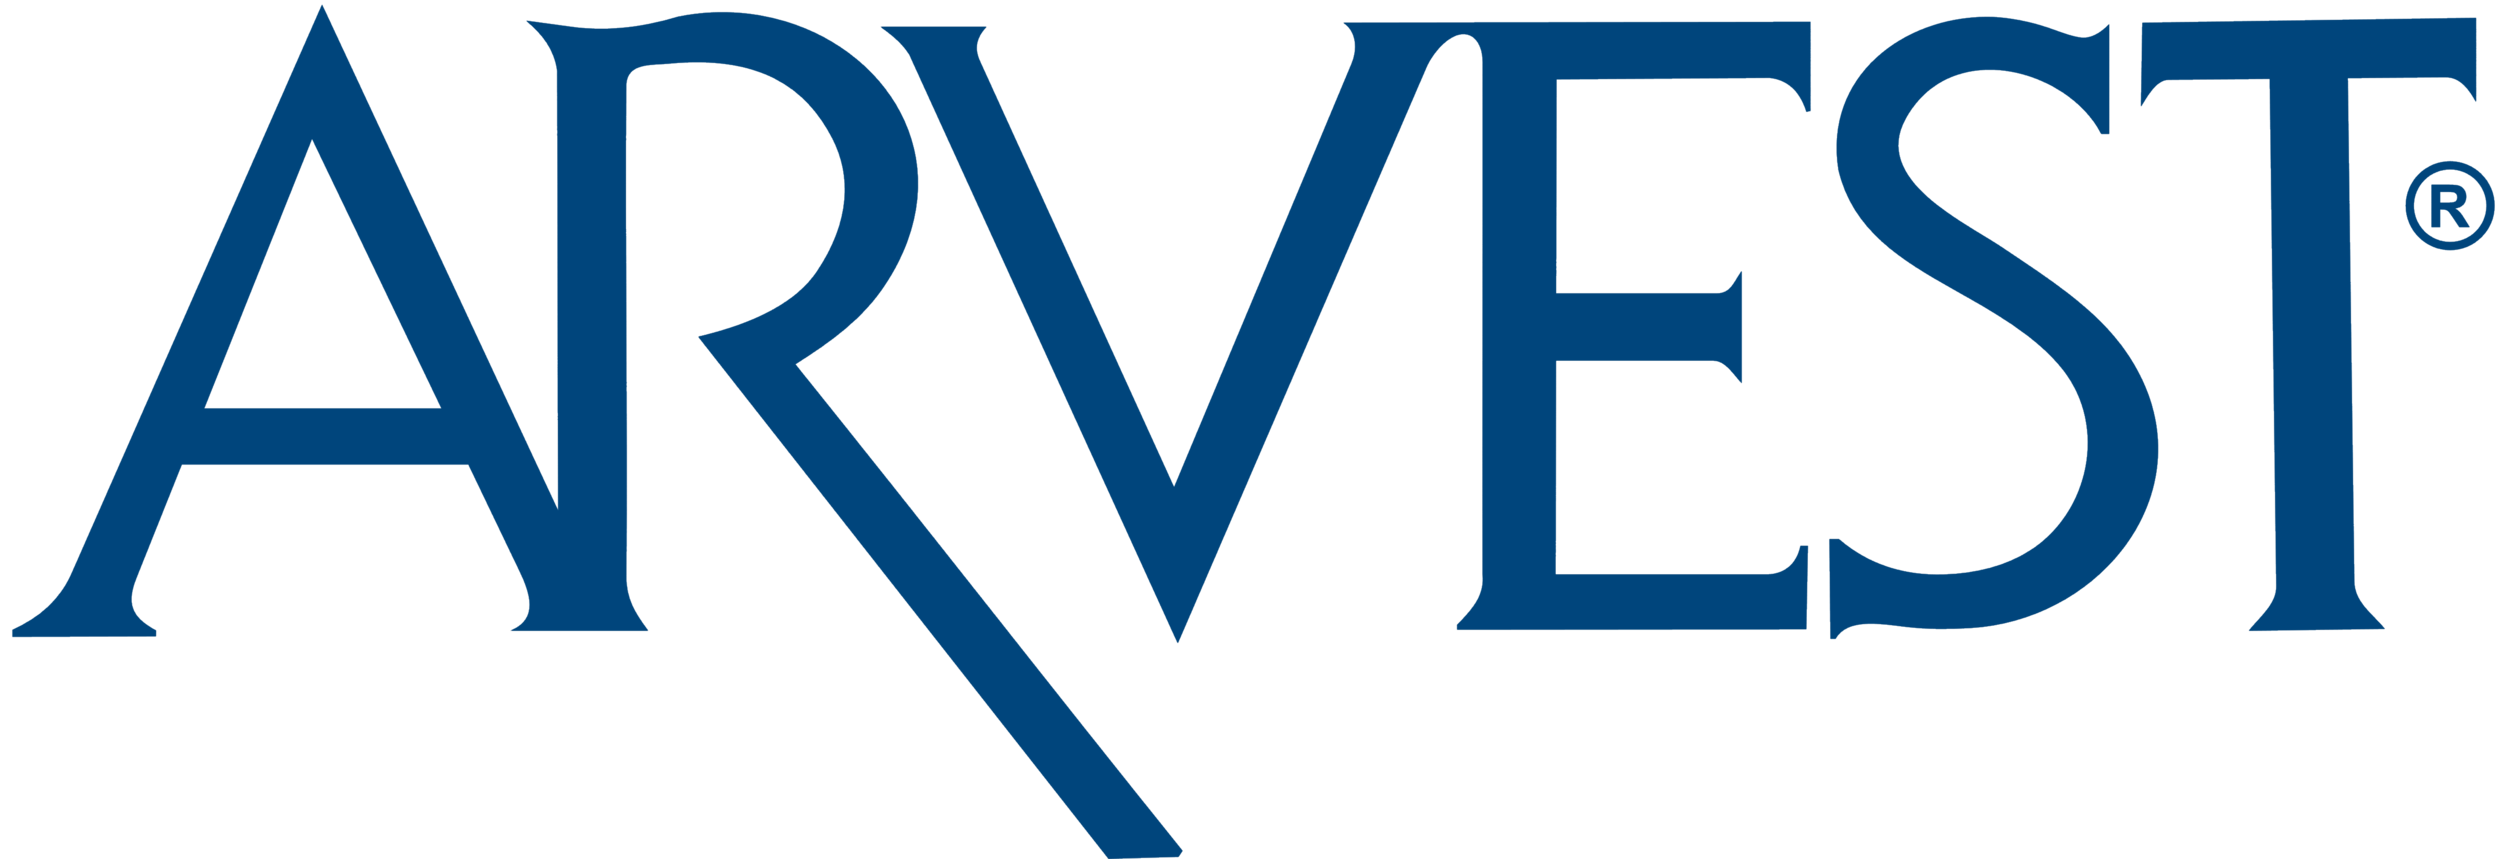 Arvest_Bank_logo.png